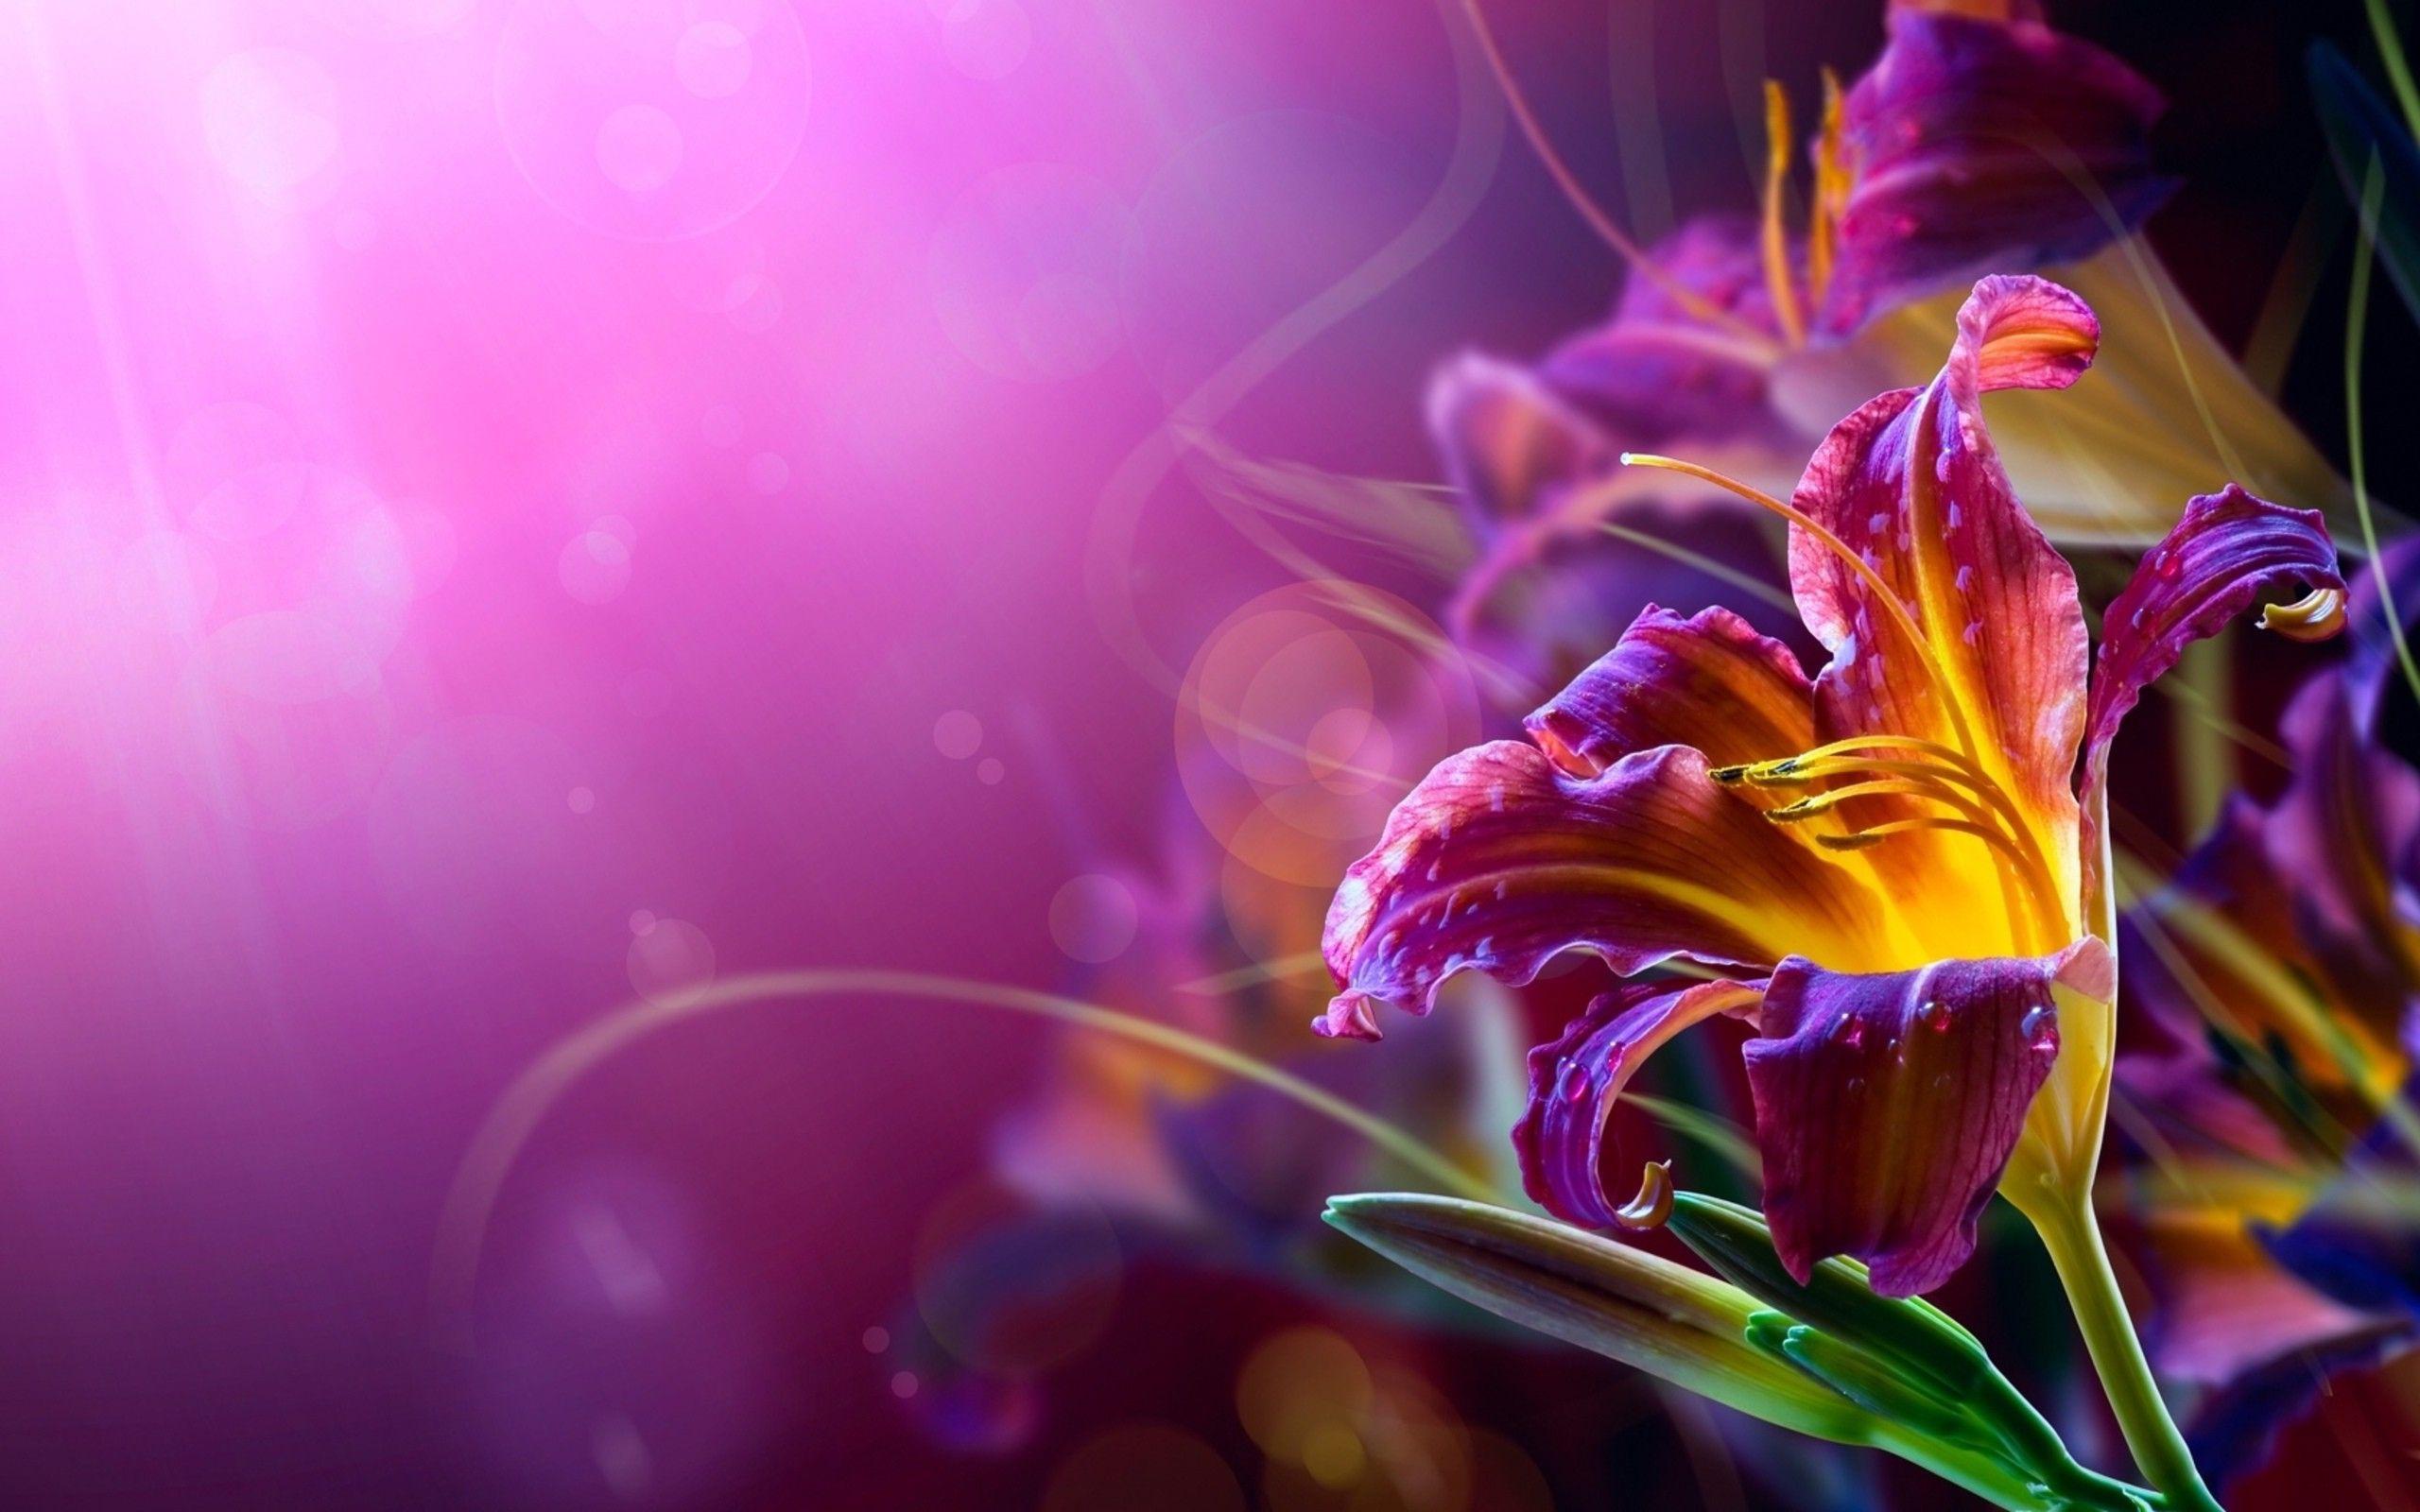 abstract flowers. Flower desktop wallpaper, Abstract flowers, Name wallpaper